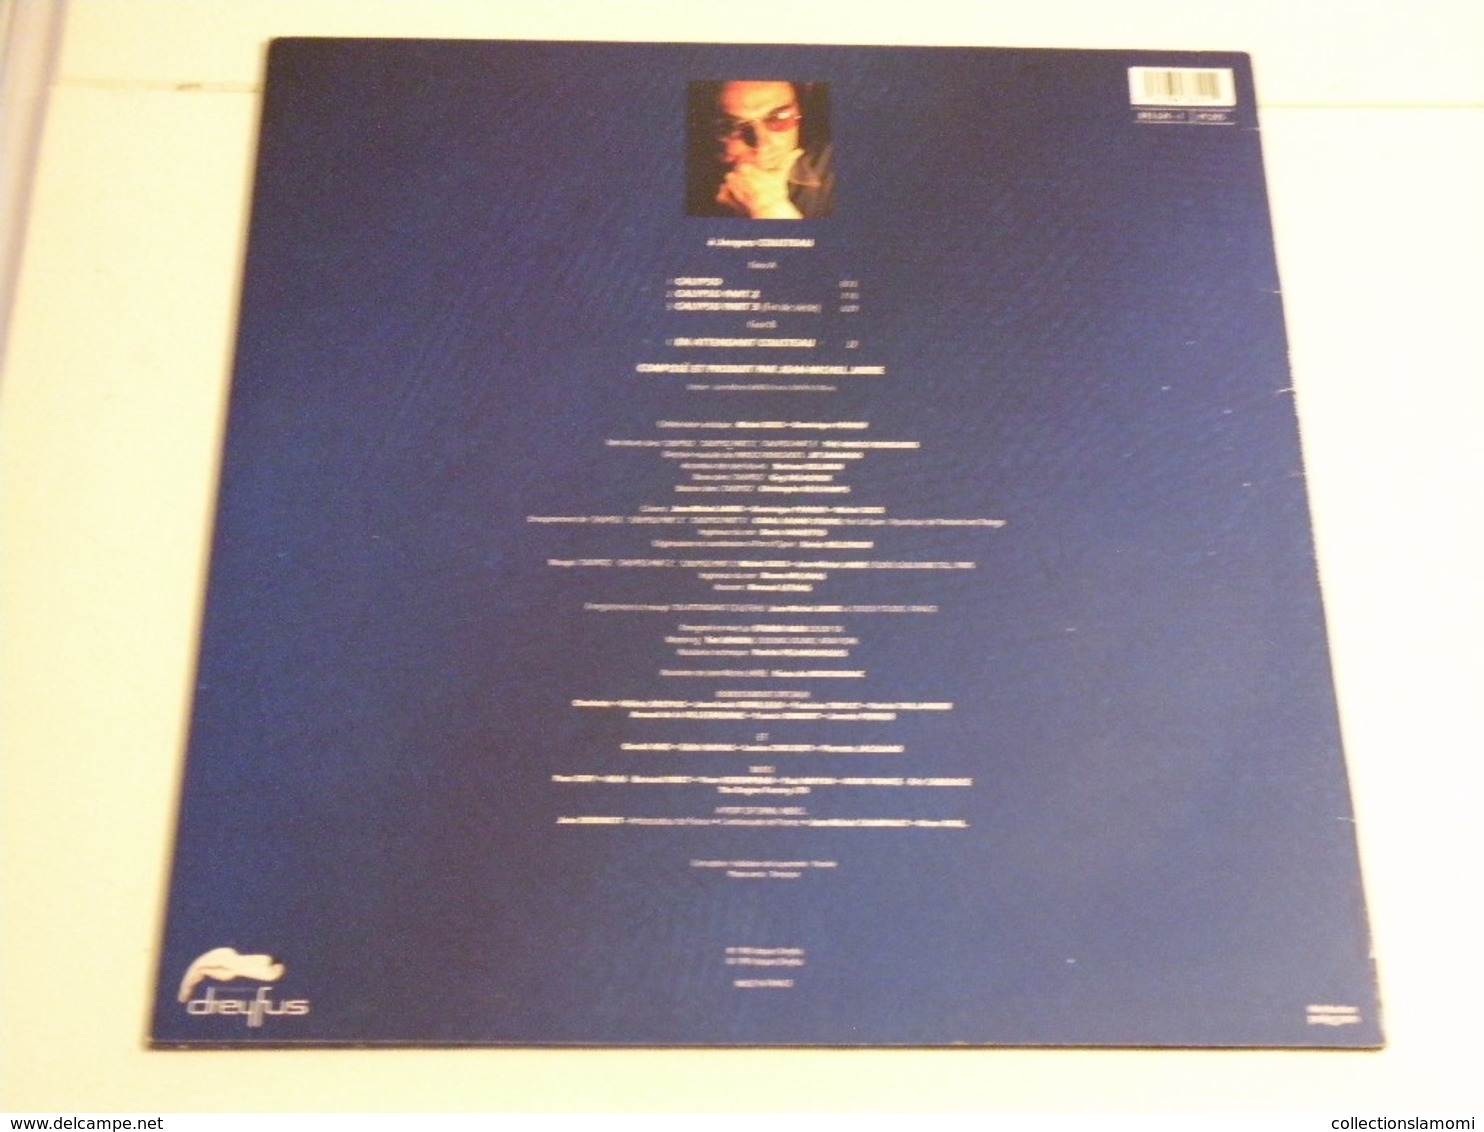 Jean Michel Jarre - (Titres Sur Photos) - Vinyle 33 T LP - Musicals